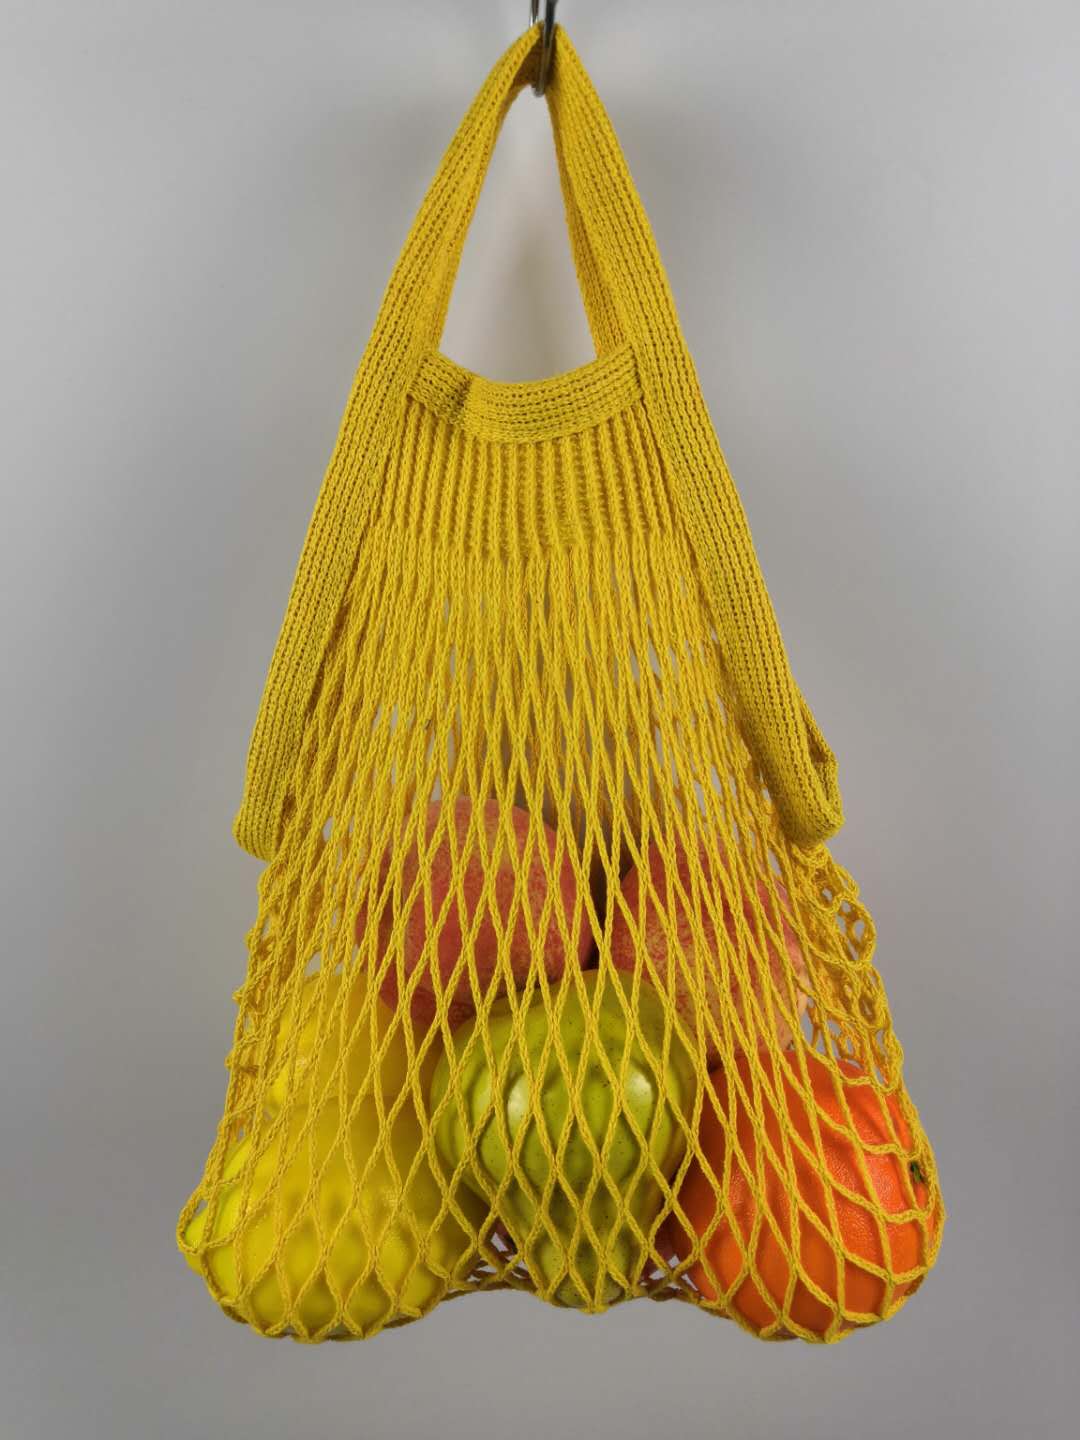 new model net bag